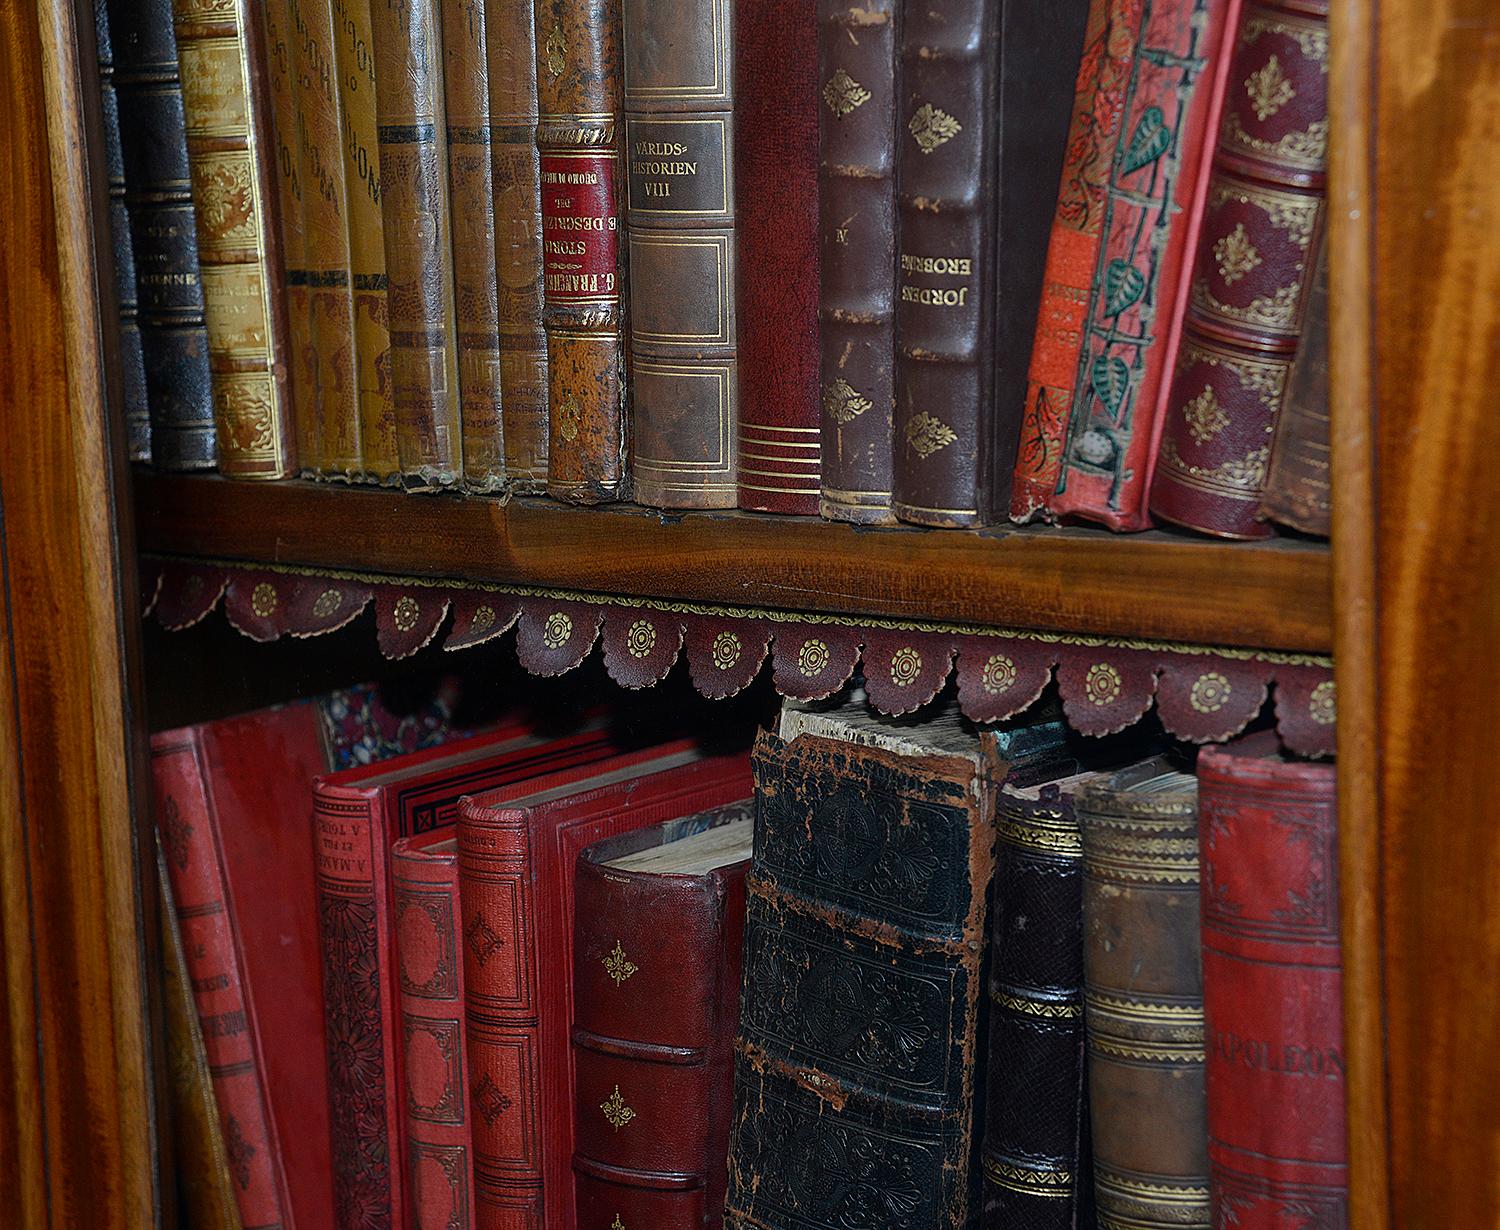 mahogany bookshelf